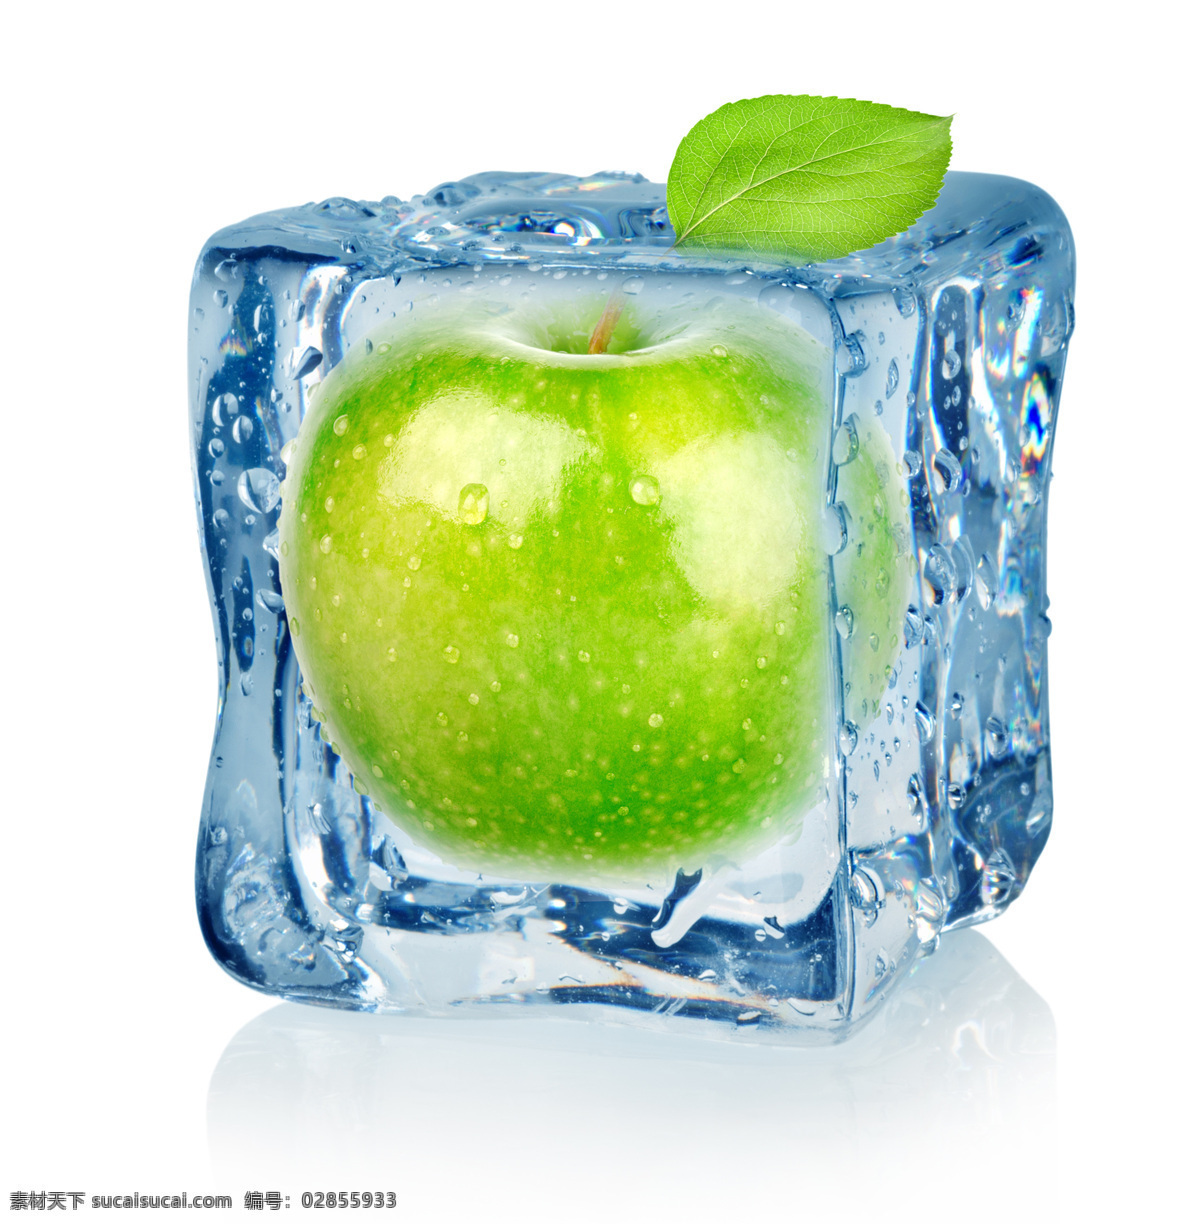 冻 冰 里 新鲜 苹果 绿色 水滴 苹果图片 餐饮美食